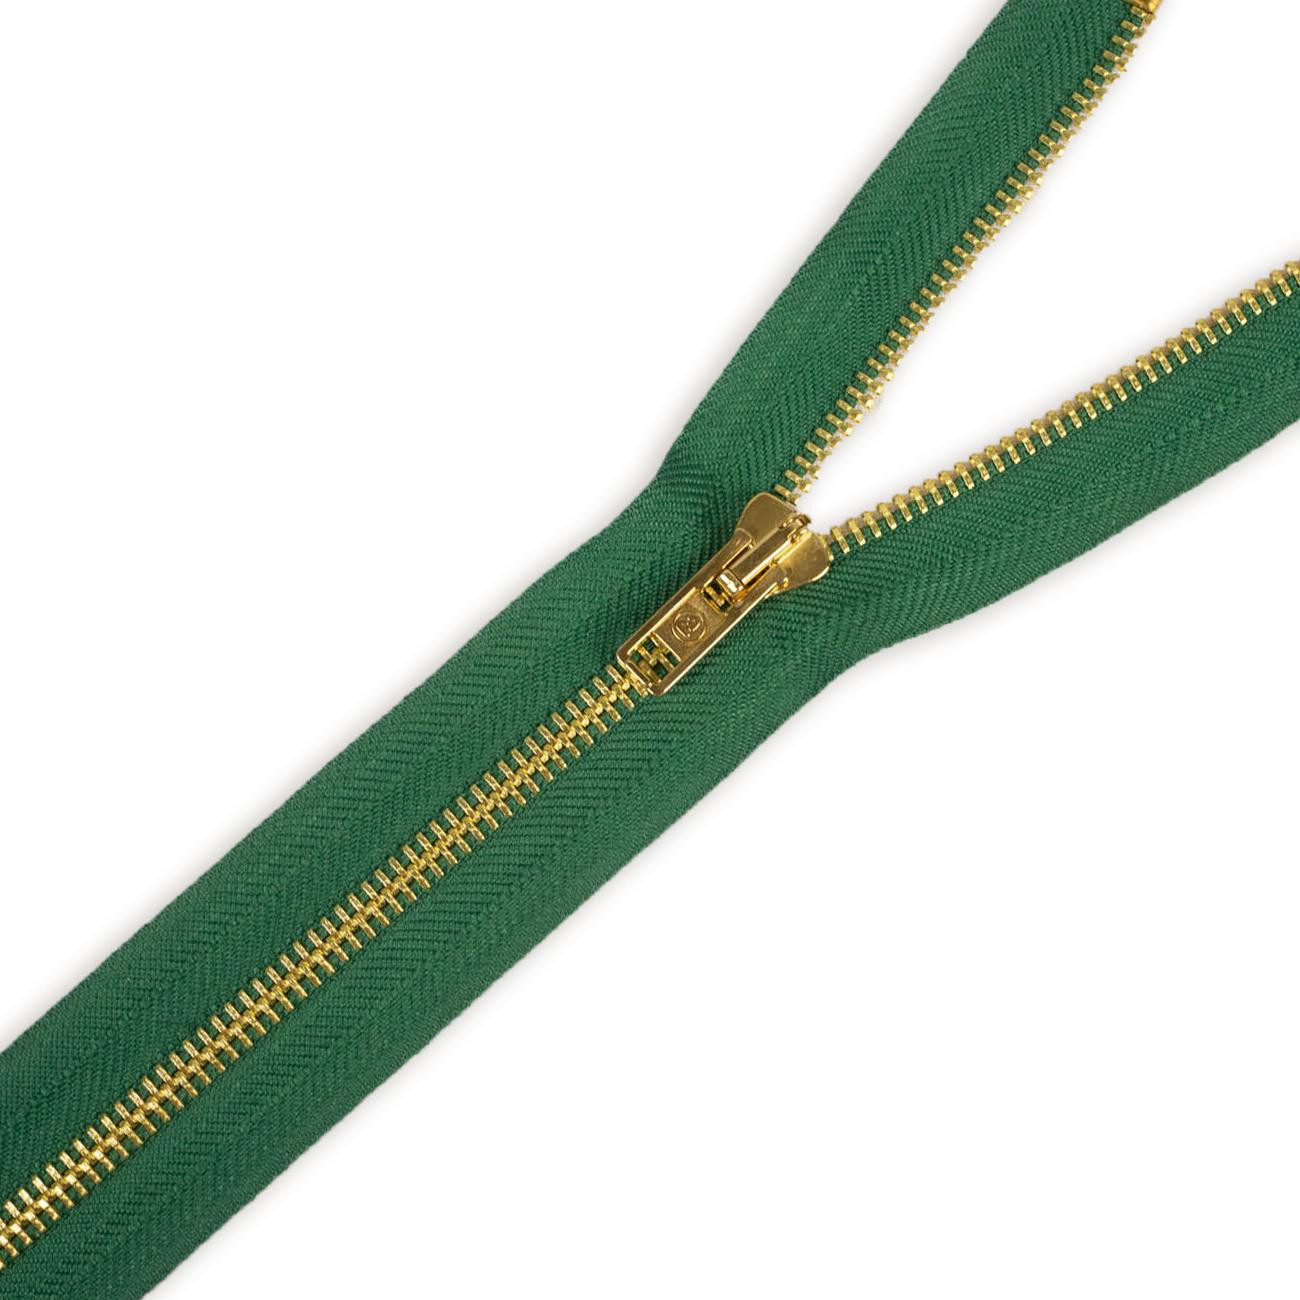 Metall-Reißverschluss teilbar 30 cm - grün/ gold